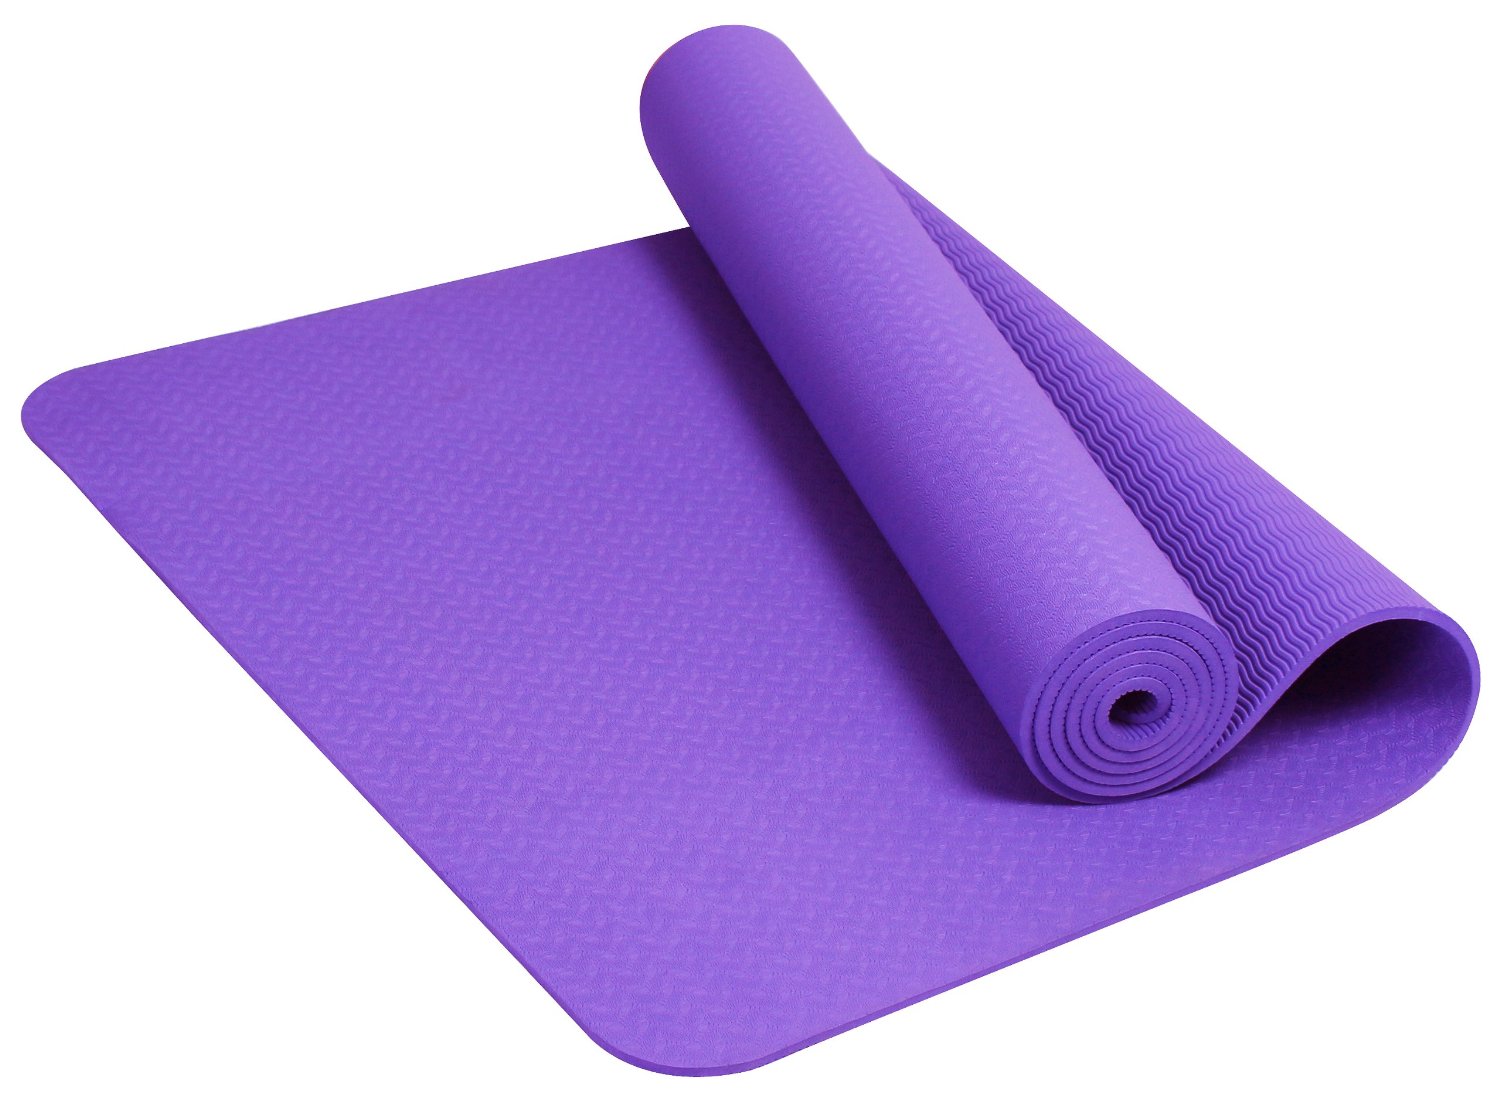 Premium Slip Resistant and Waterproof Yoga Mat – ProTEKgr